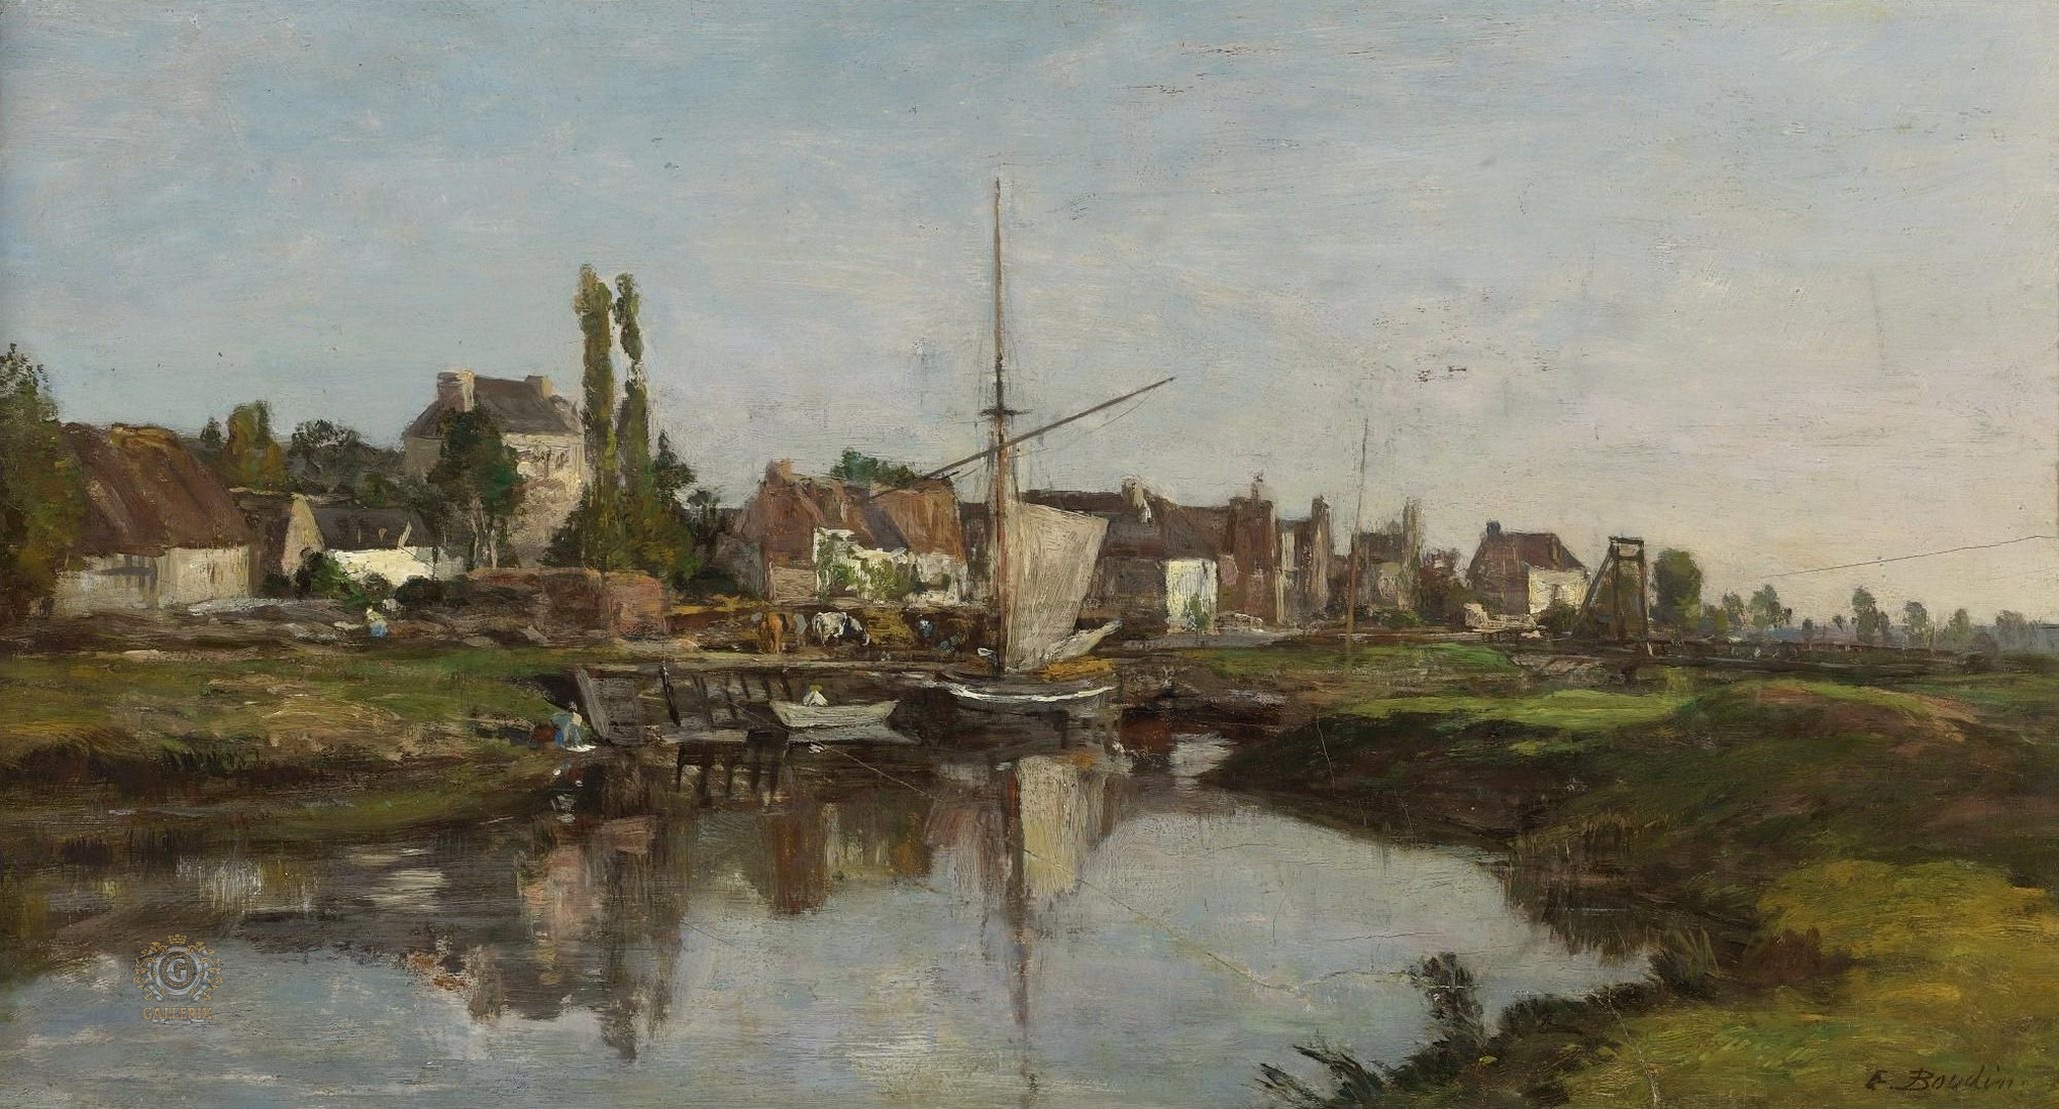 Эжен Буден. "Деревня в Нормандии на берегу реки". 1858-1862.